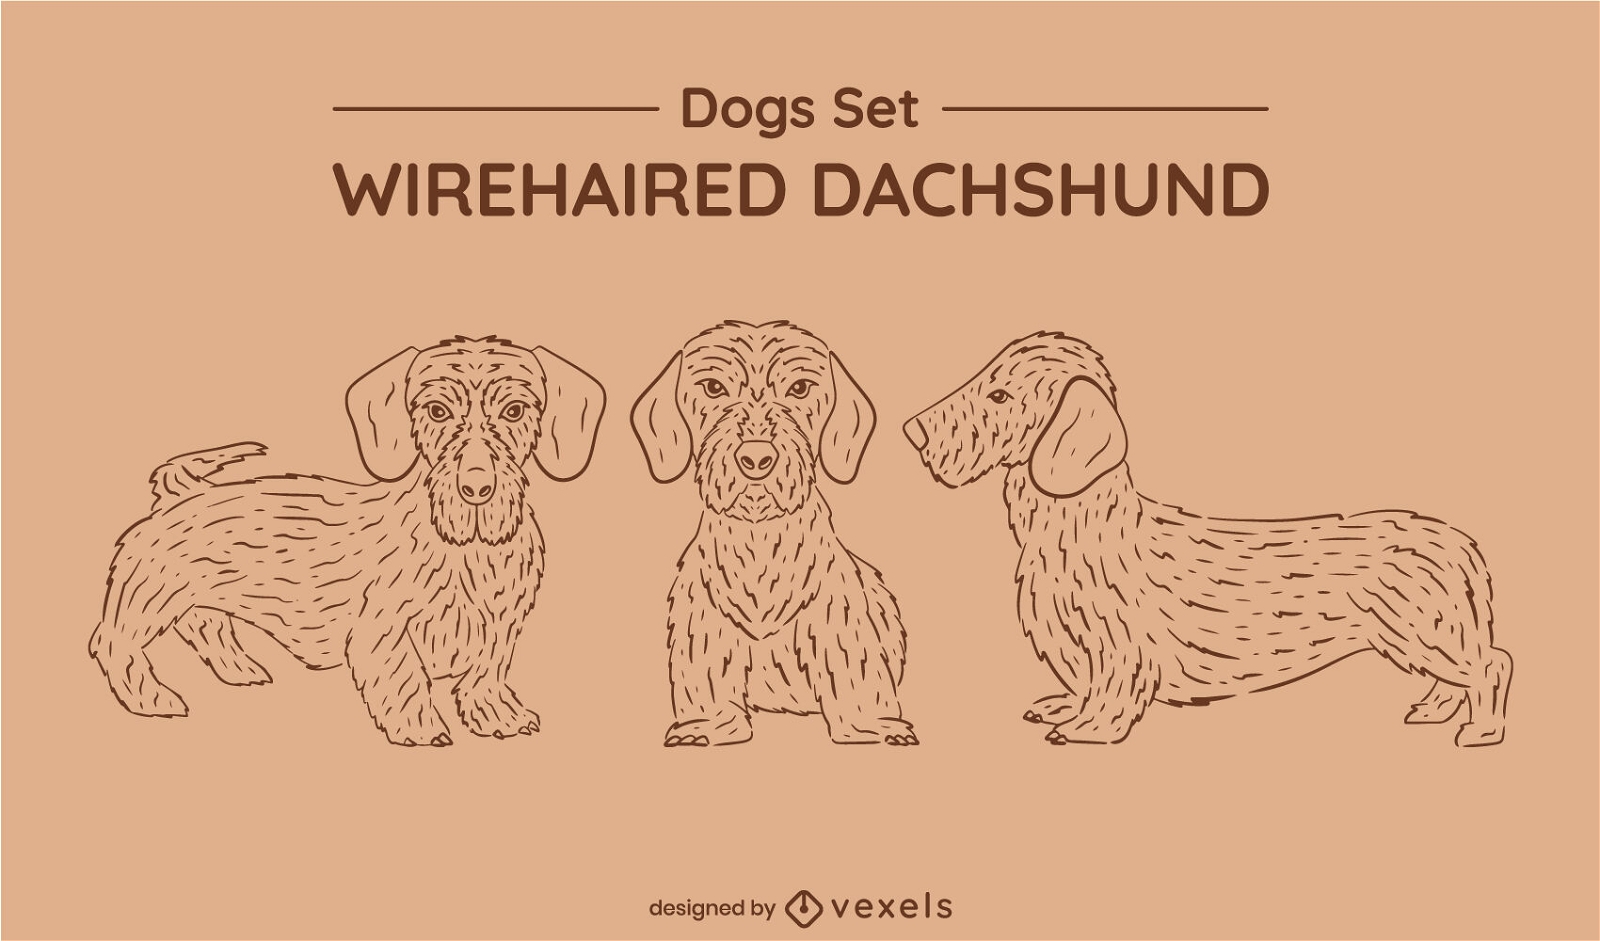 Wirehaired dachshund dog set